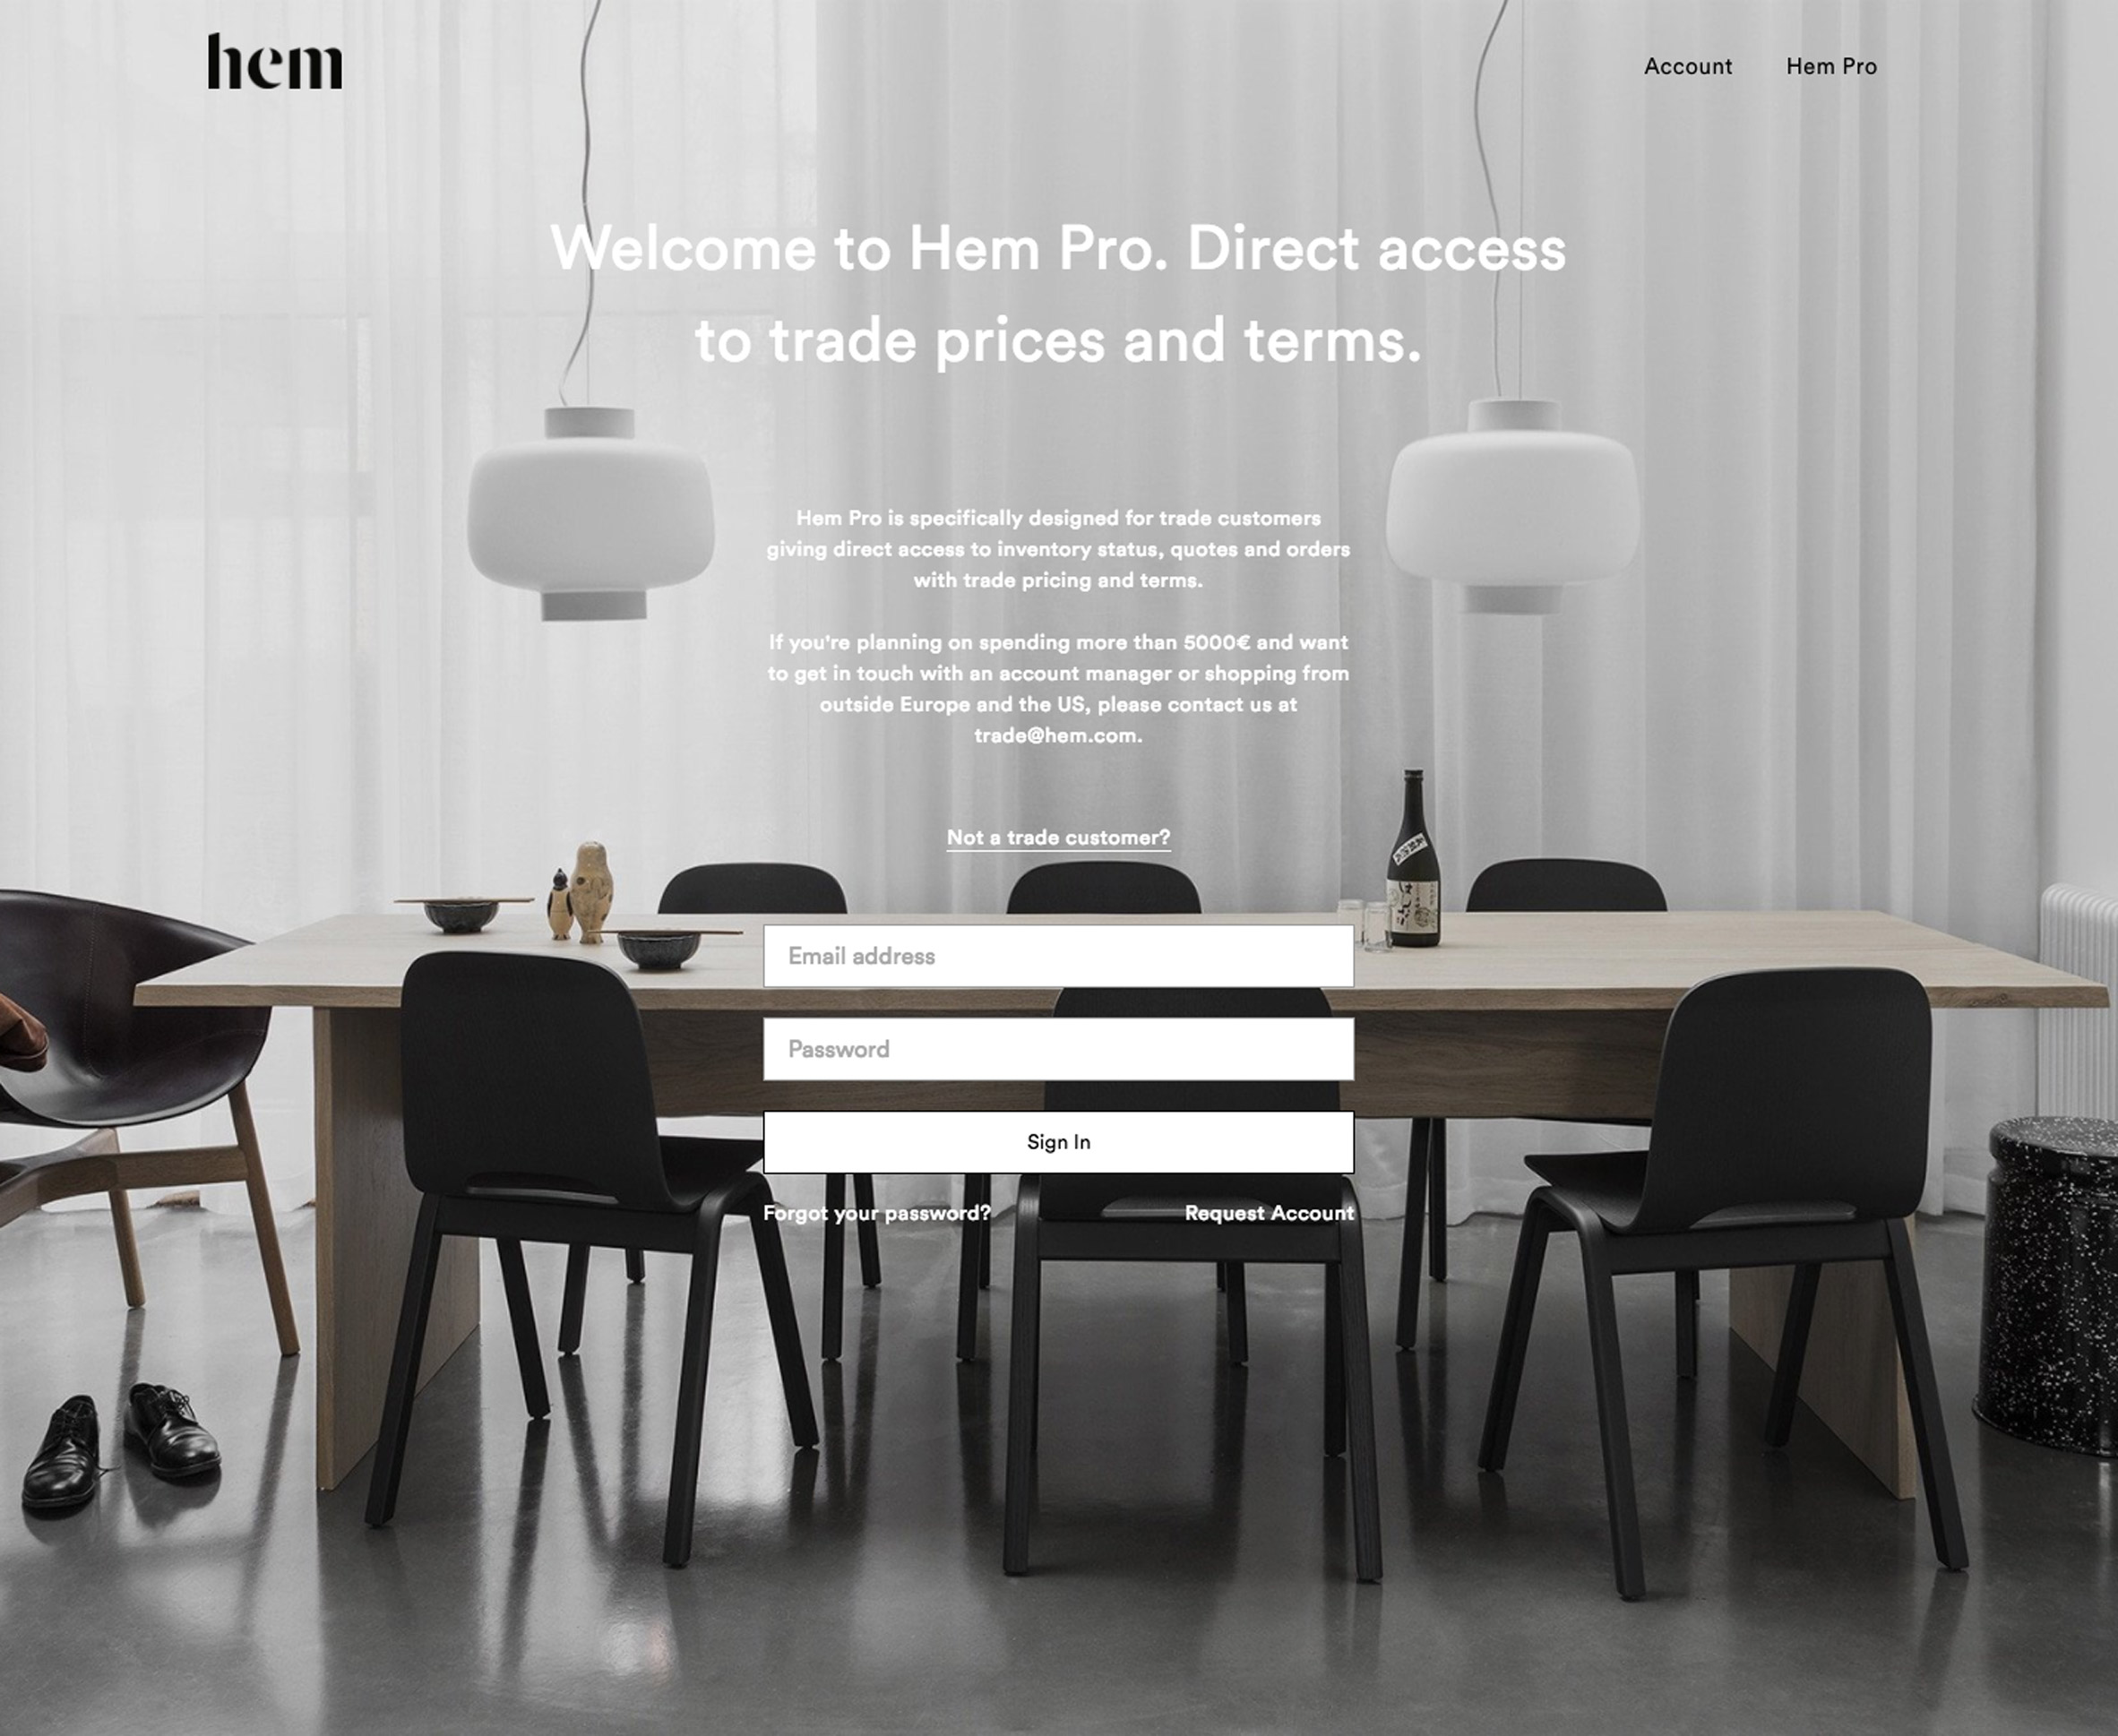 Hem launches online service